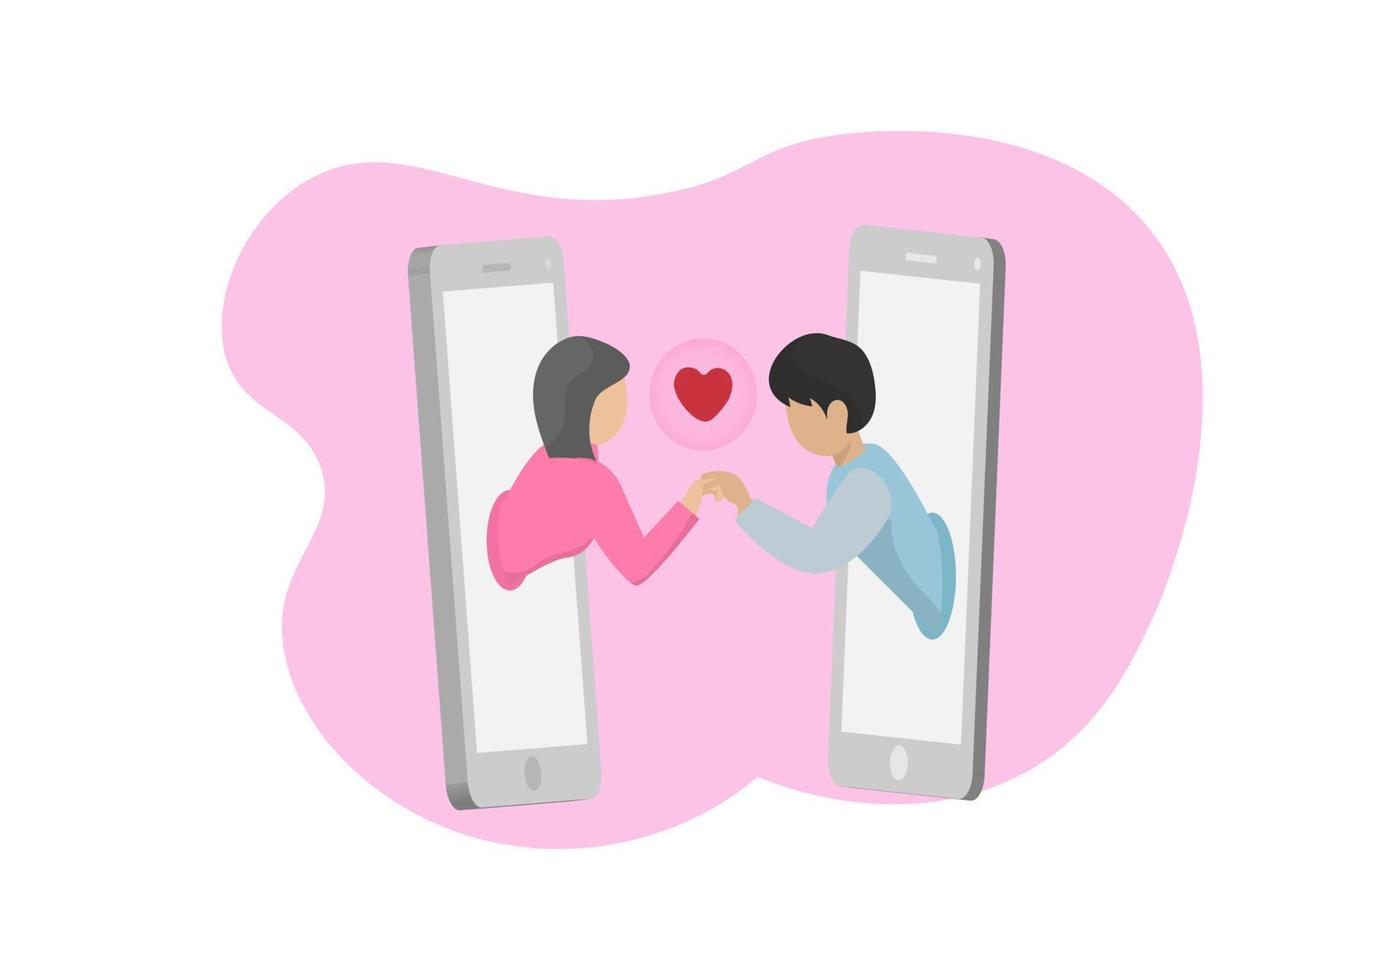 moderne jongeren gebruiken smartphone-applicaties als communicatiemiddelen. het concept van virtuele relaties over insluiting en zelfisolatie. vector illustratie